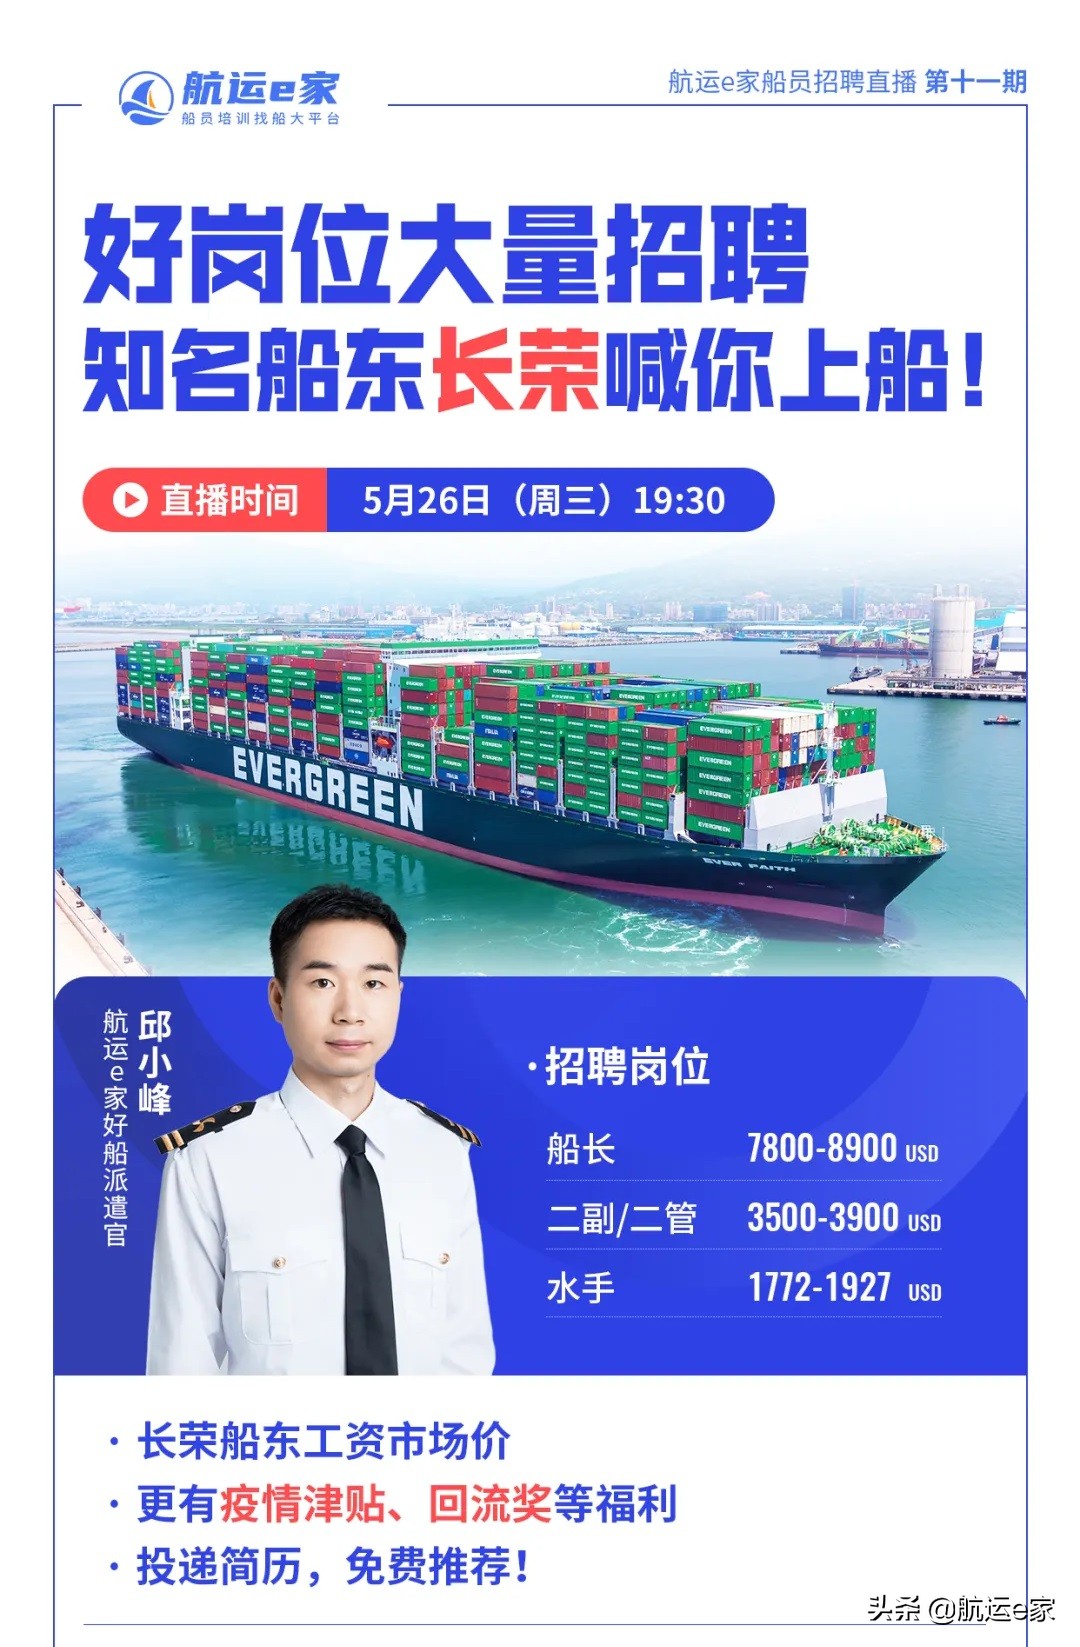 中国船员招聘网 官网（知名船东）